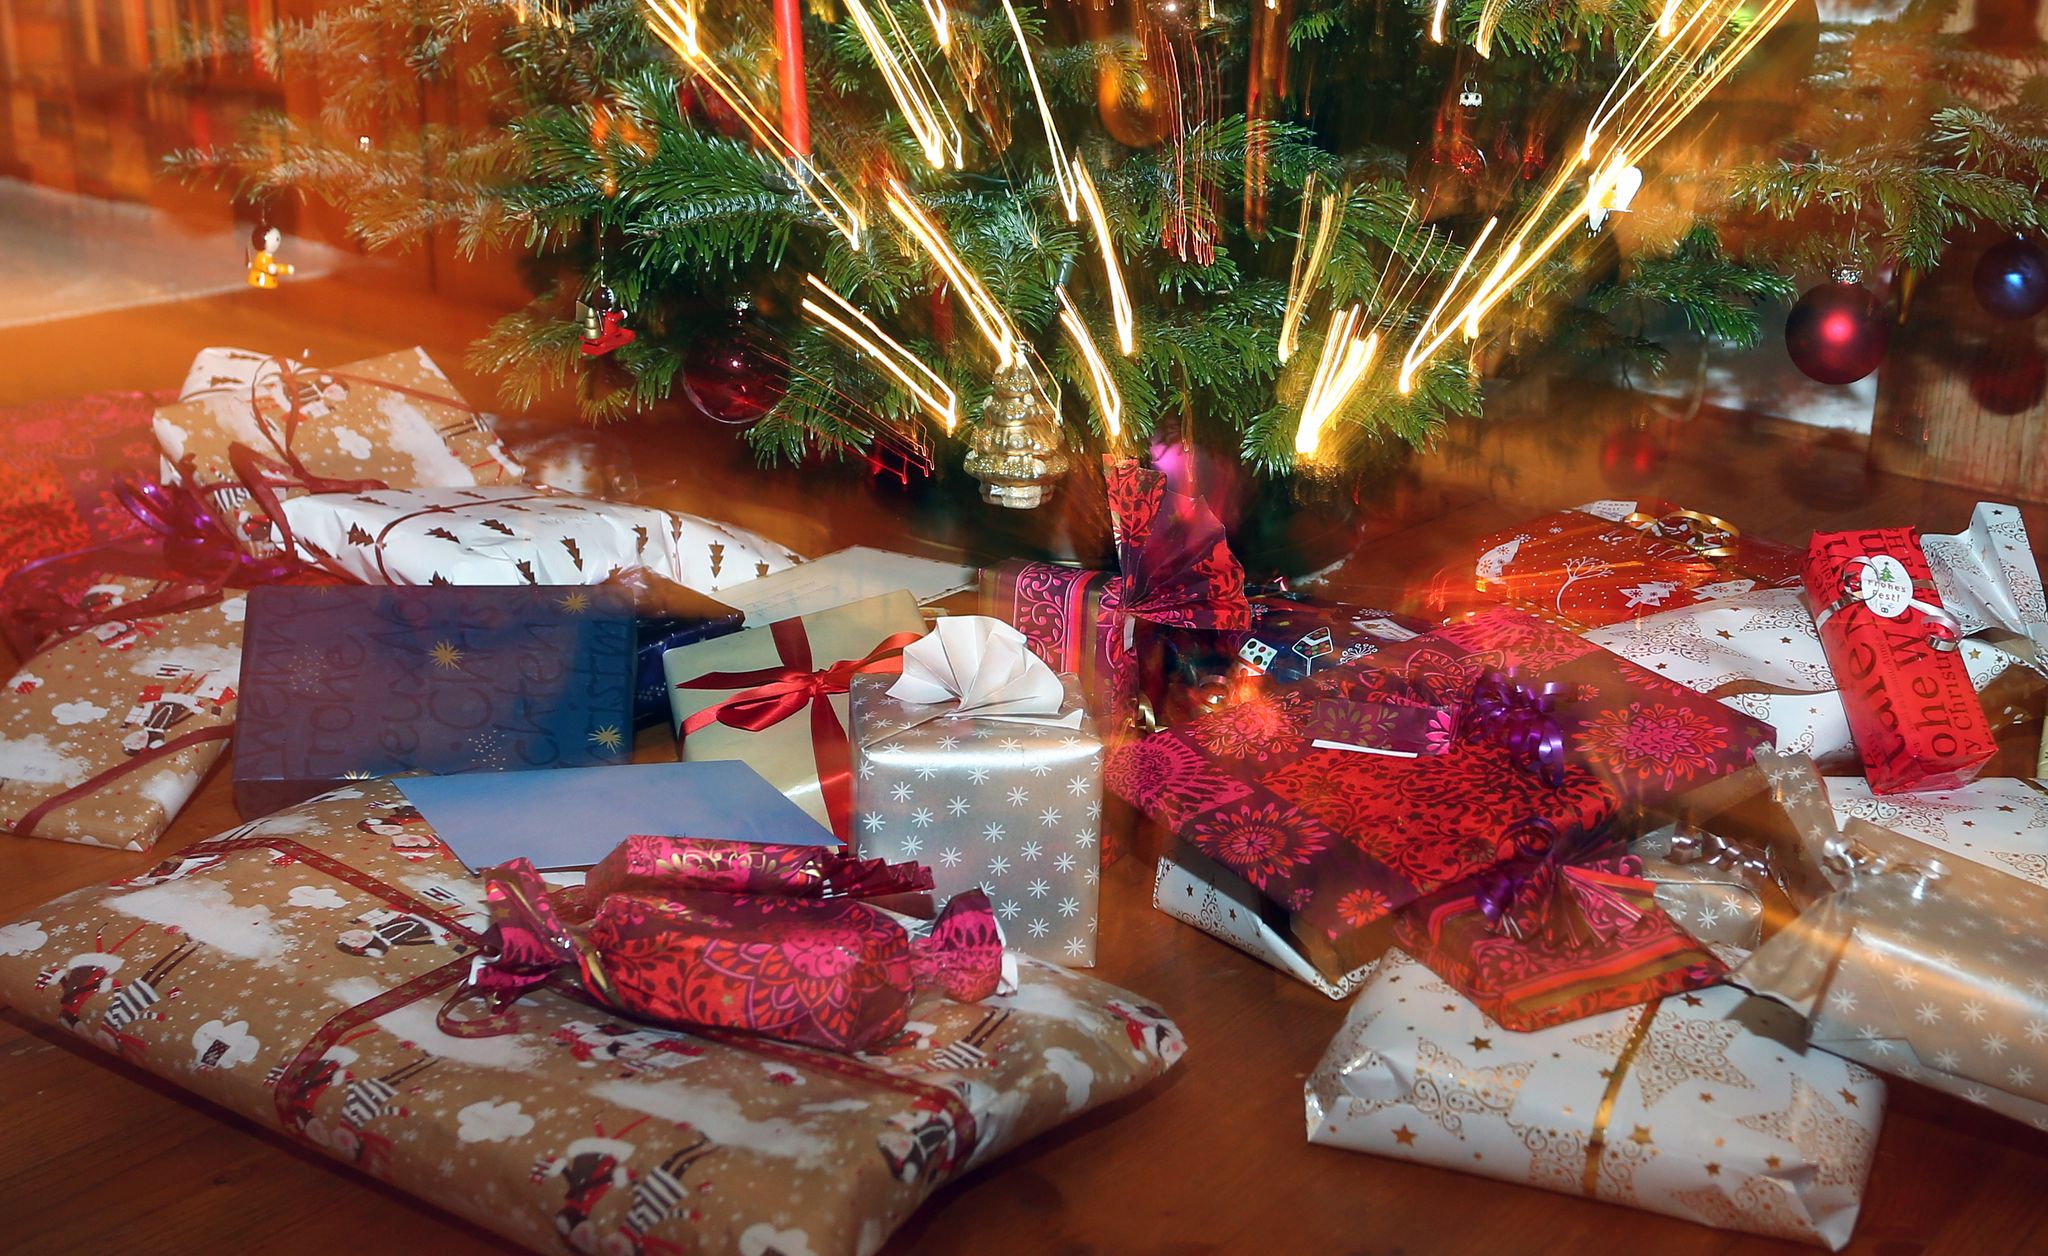 Noël 2019: 25 idées de cadeaux de Noël à moins de 5 euros ! - MCE TV